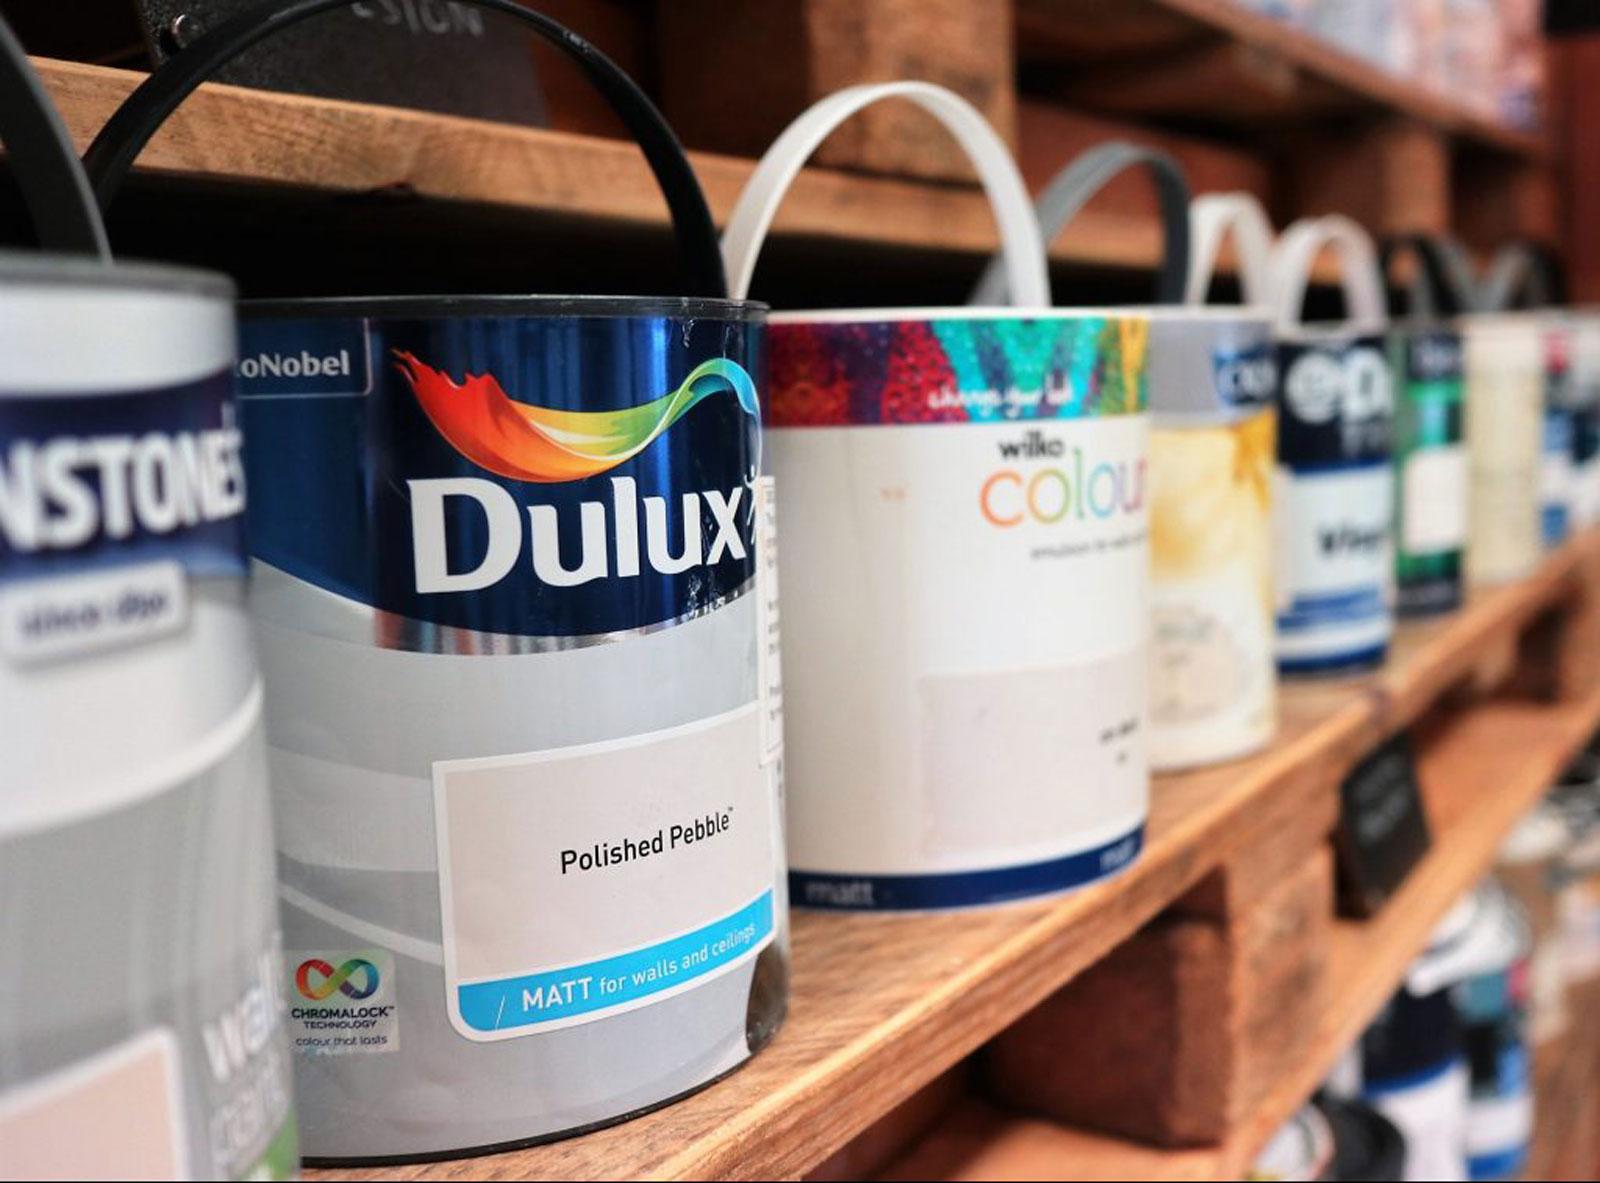 Dulux paint cans on a shelf